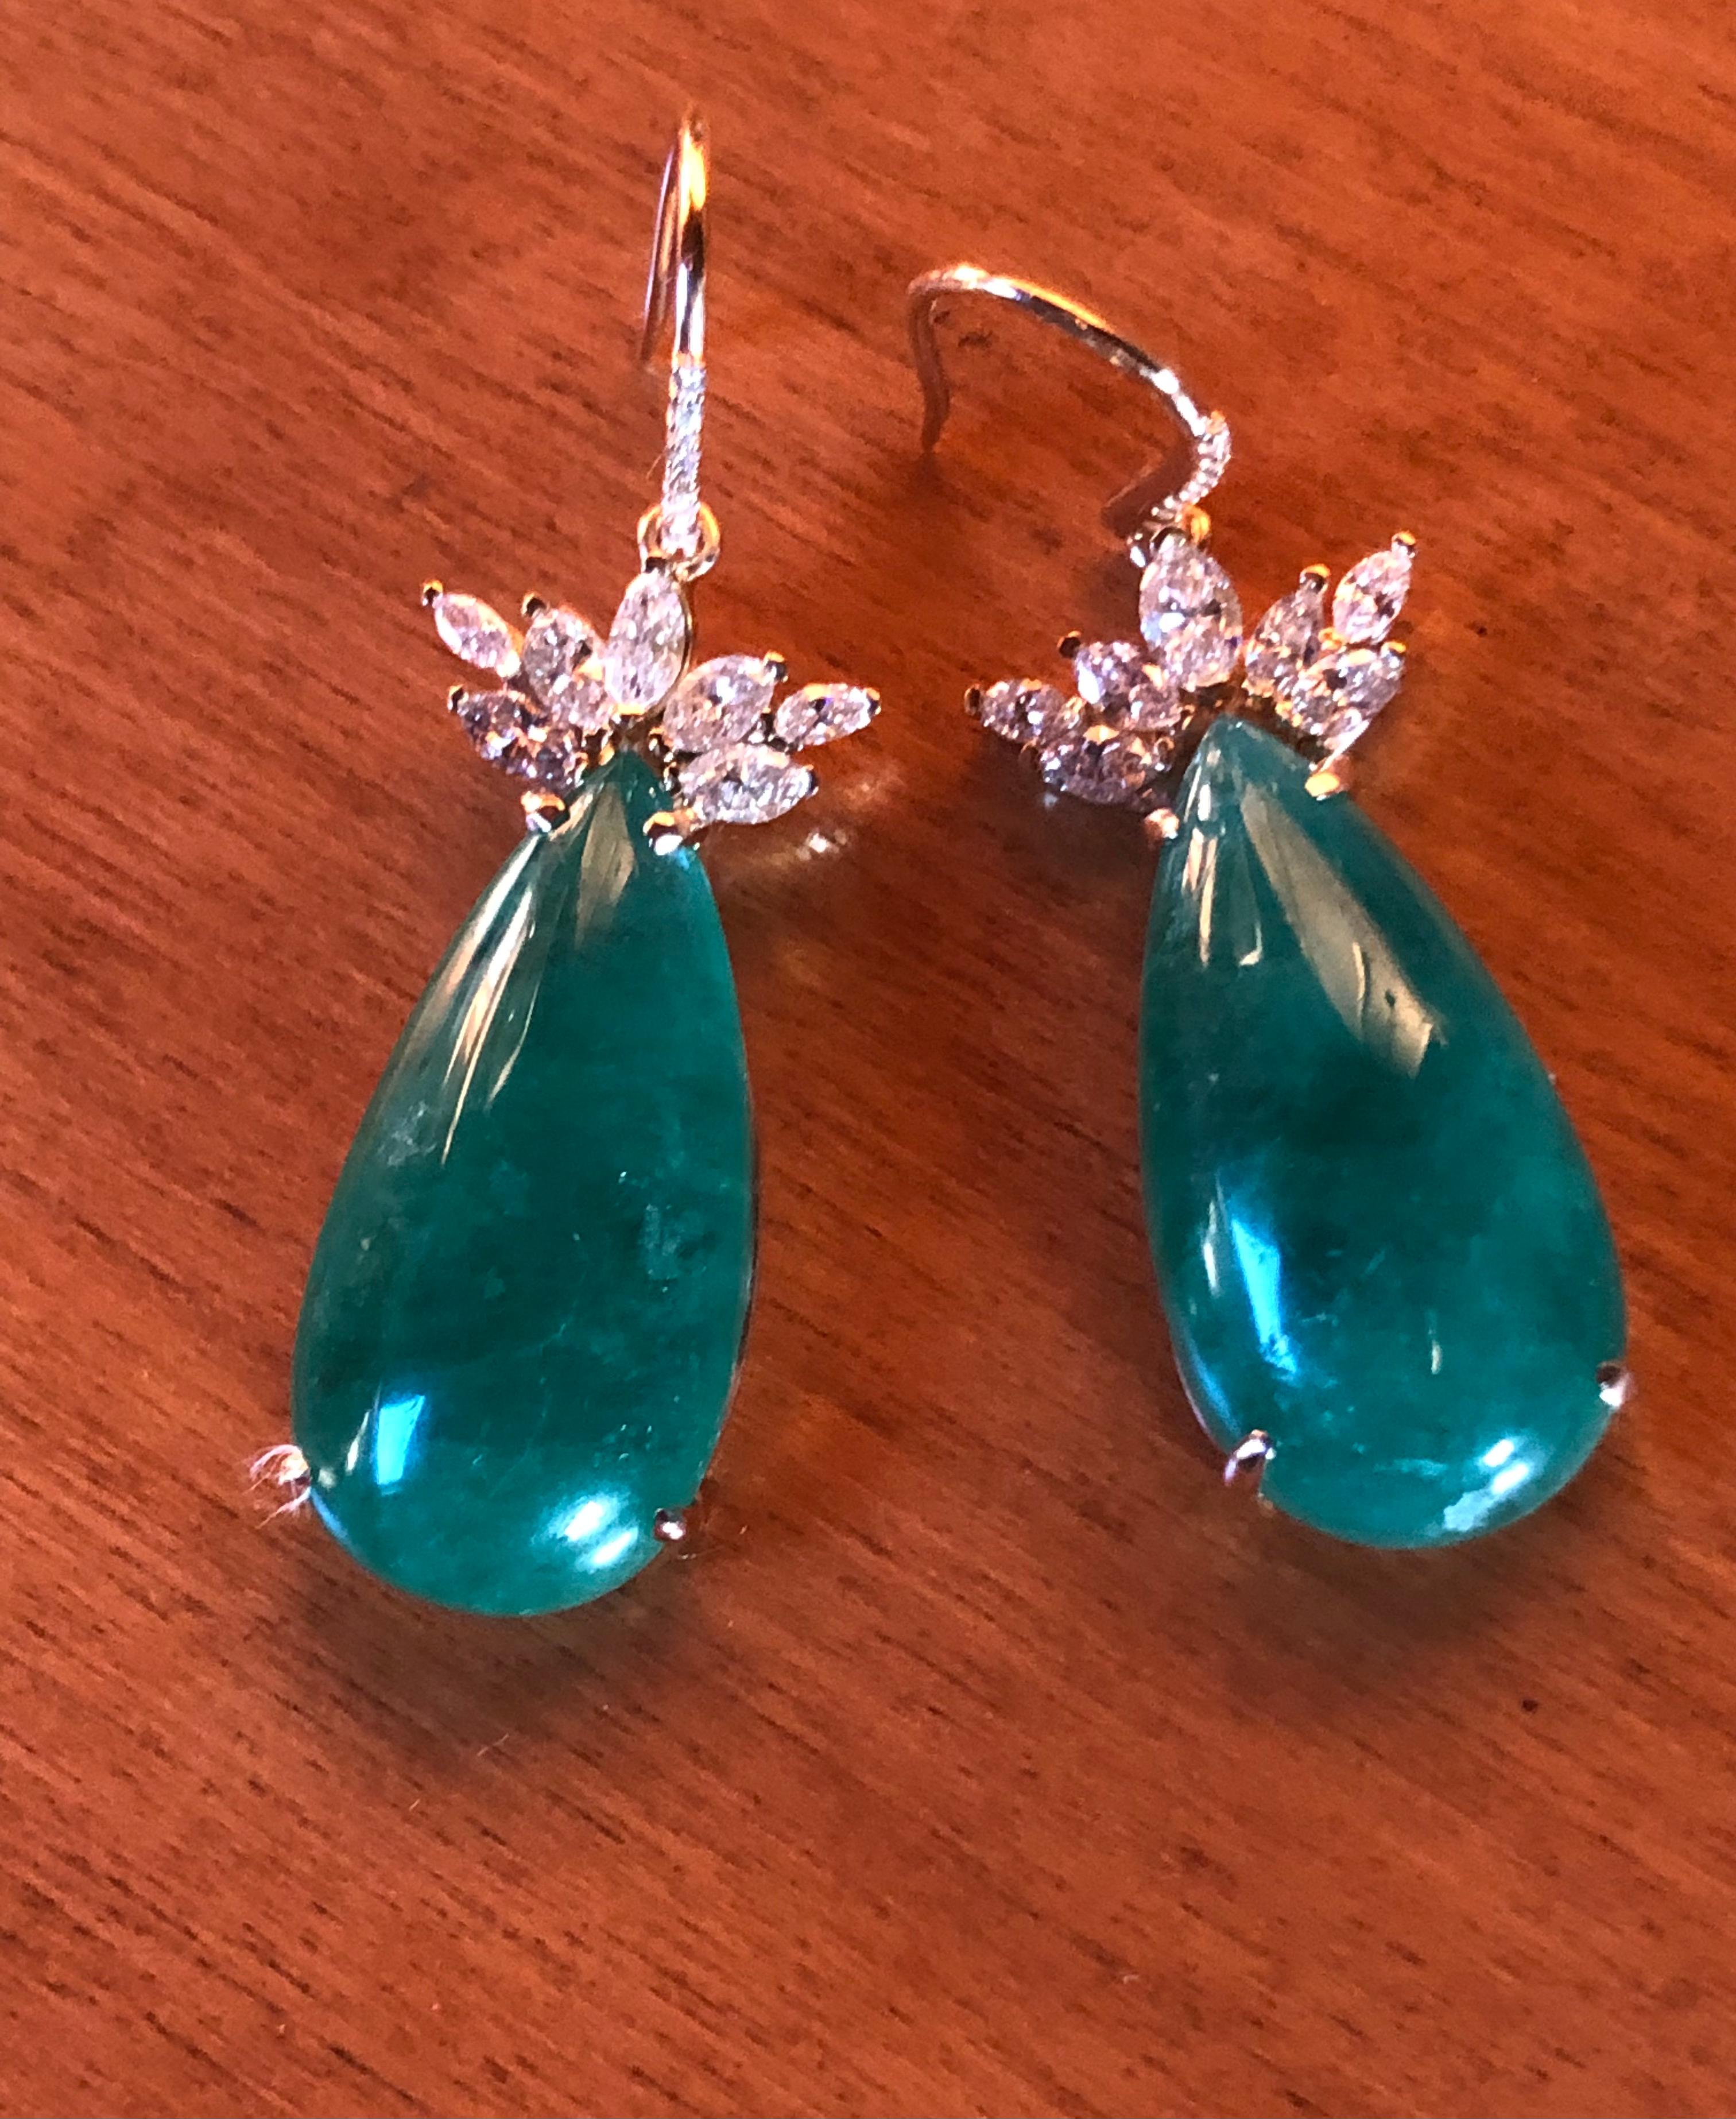 Emeralds Maravellous  56.27 Carats Diamond, Pear-Shaped Cabochon Natural Colombian Emerald Drop Earrings (Boucles d'oreilles pendantes en émeraude colombienne)
Paire de pendants d'oreille en or jaune 18 carats, chacun équipé d'un crochet en diamant